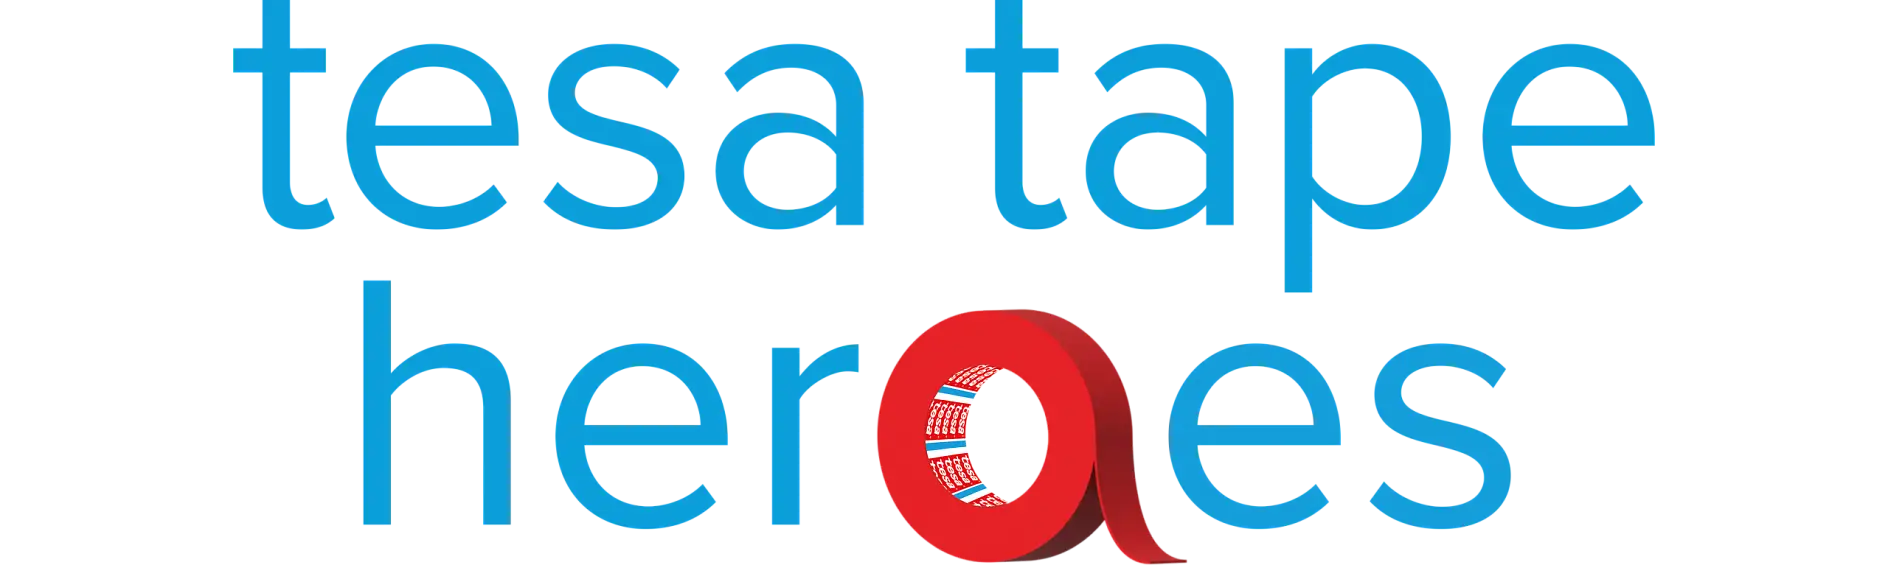 tesa-bant-kahramanları-logo